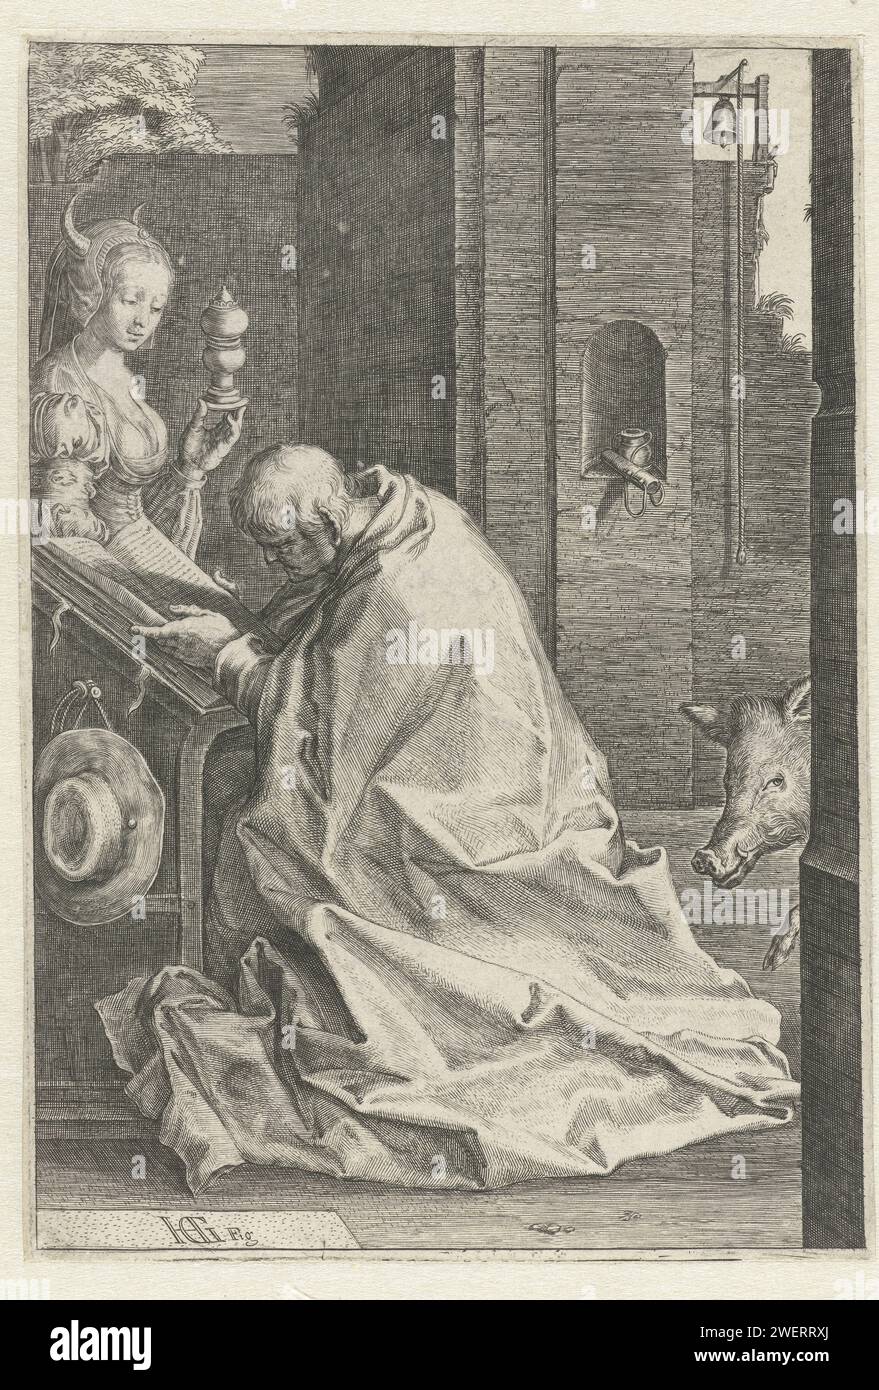 Die Versuchung des Heiligen Antonius, 1593 - 1594 Druck Ein Mann liest einen Leser. Ein Wildschwein erscheint hinter ihm, eine gehörnte Frau vor ihm. Papiergravur Versuchungen von St. Antonius Abt Stockfoto